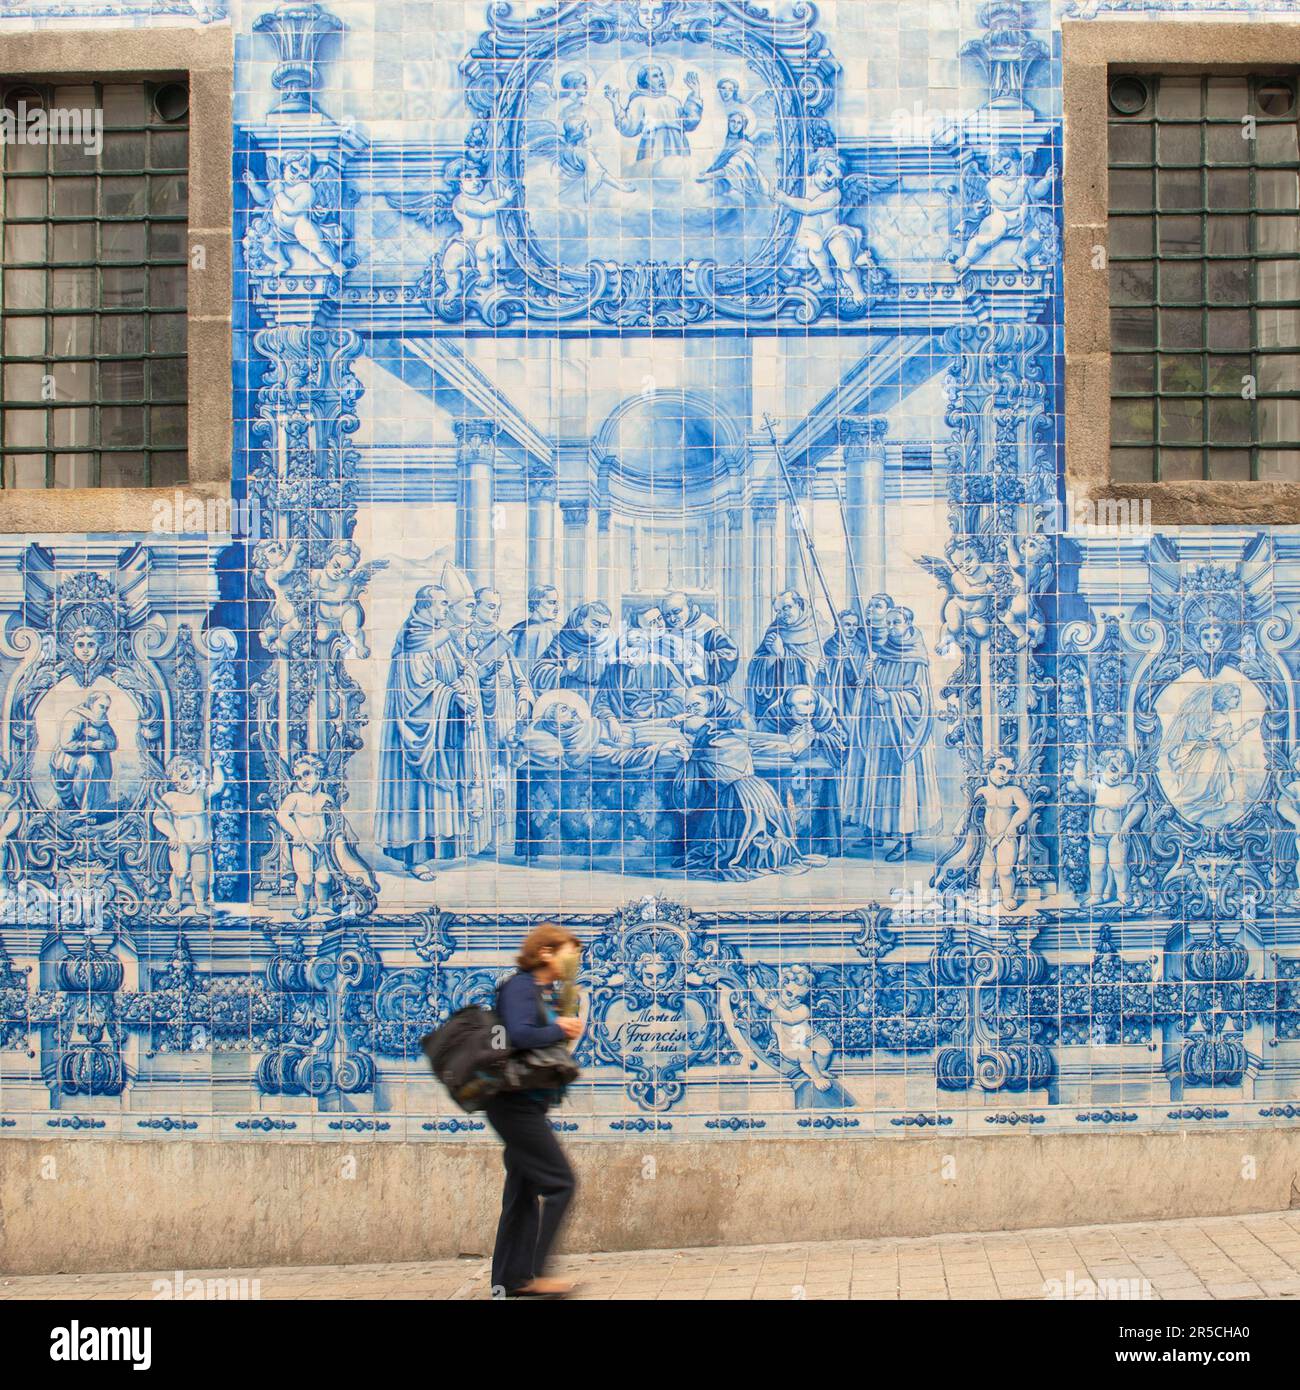 Painted tiles, Capela Das Almas, Porto, Portugal, azulejos, chapel, ceramic art Stock Photo